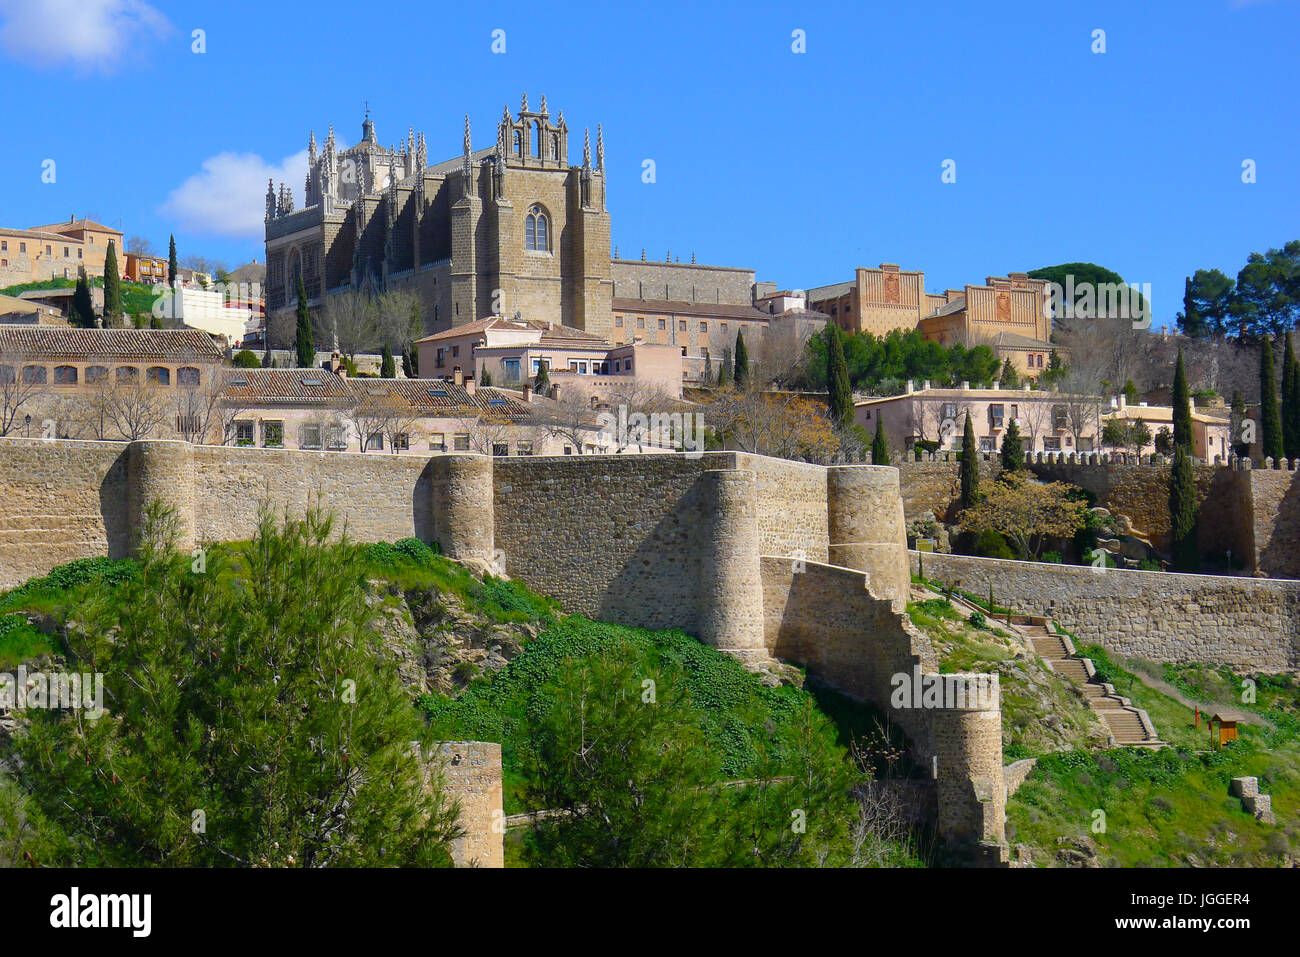 El Monasterio de San Juan de los Reyes, por encima de la muralla de la ciudad de Toledo, España. Foto de stock